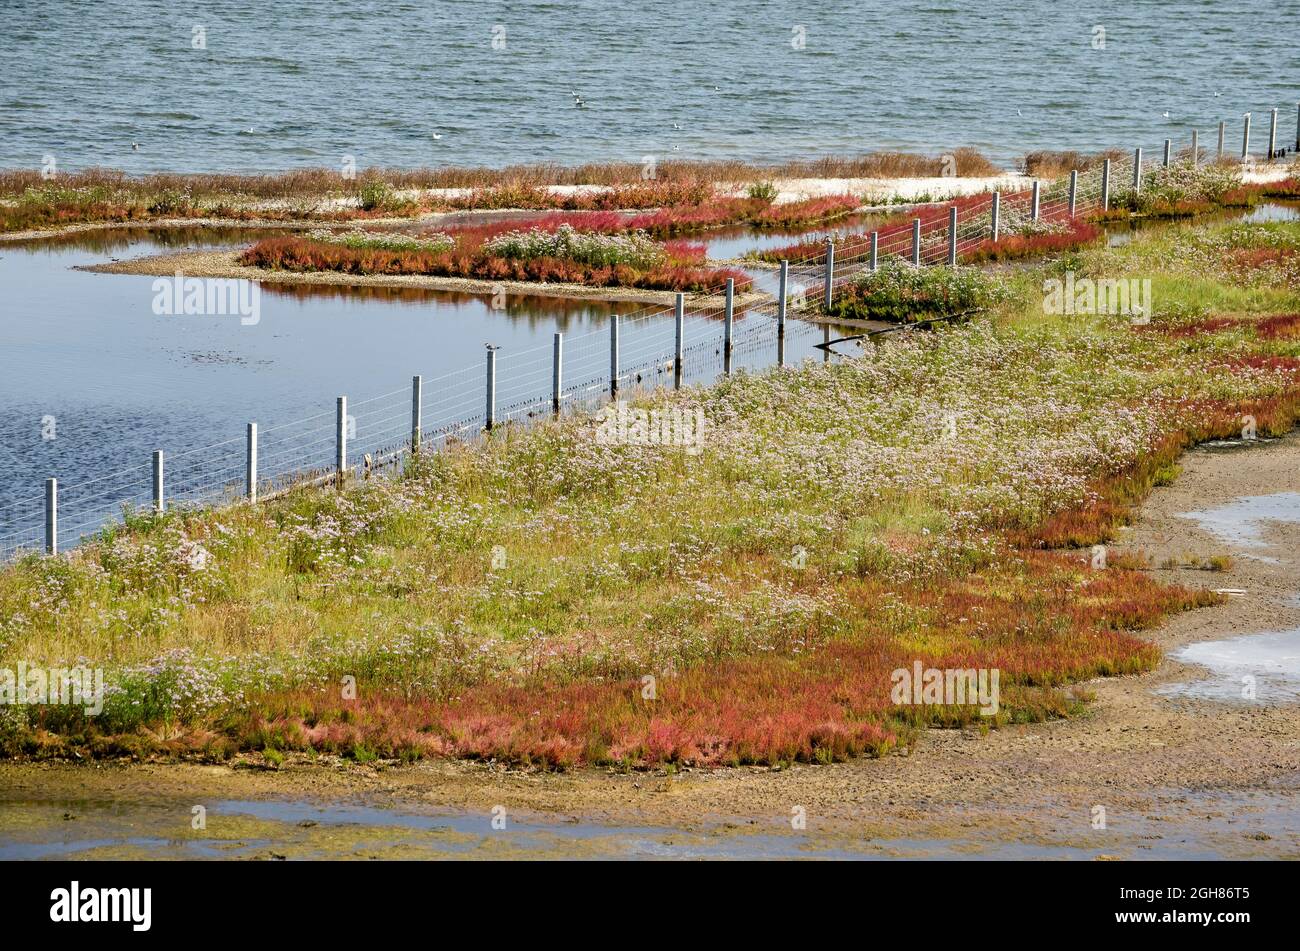 Scena molto colorata con erba, fiori selvatici, fango, sabbia, acqua e una recinzione nelle paludi salate sulle rive del lago di Grevelingen nei Paesi Bassi Foto Stock